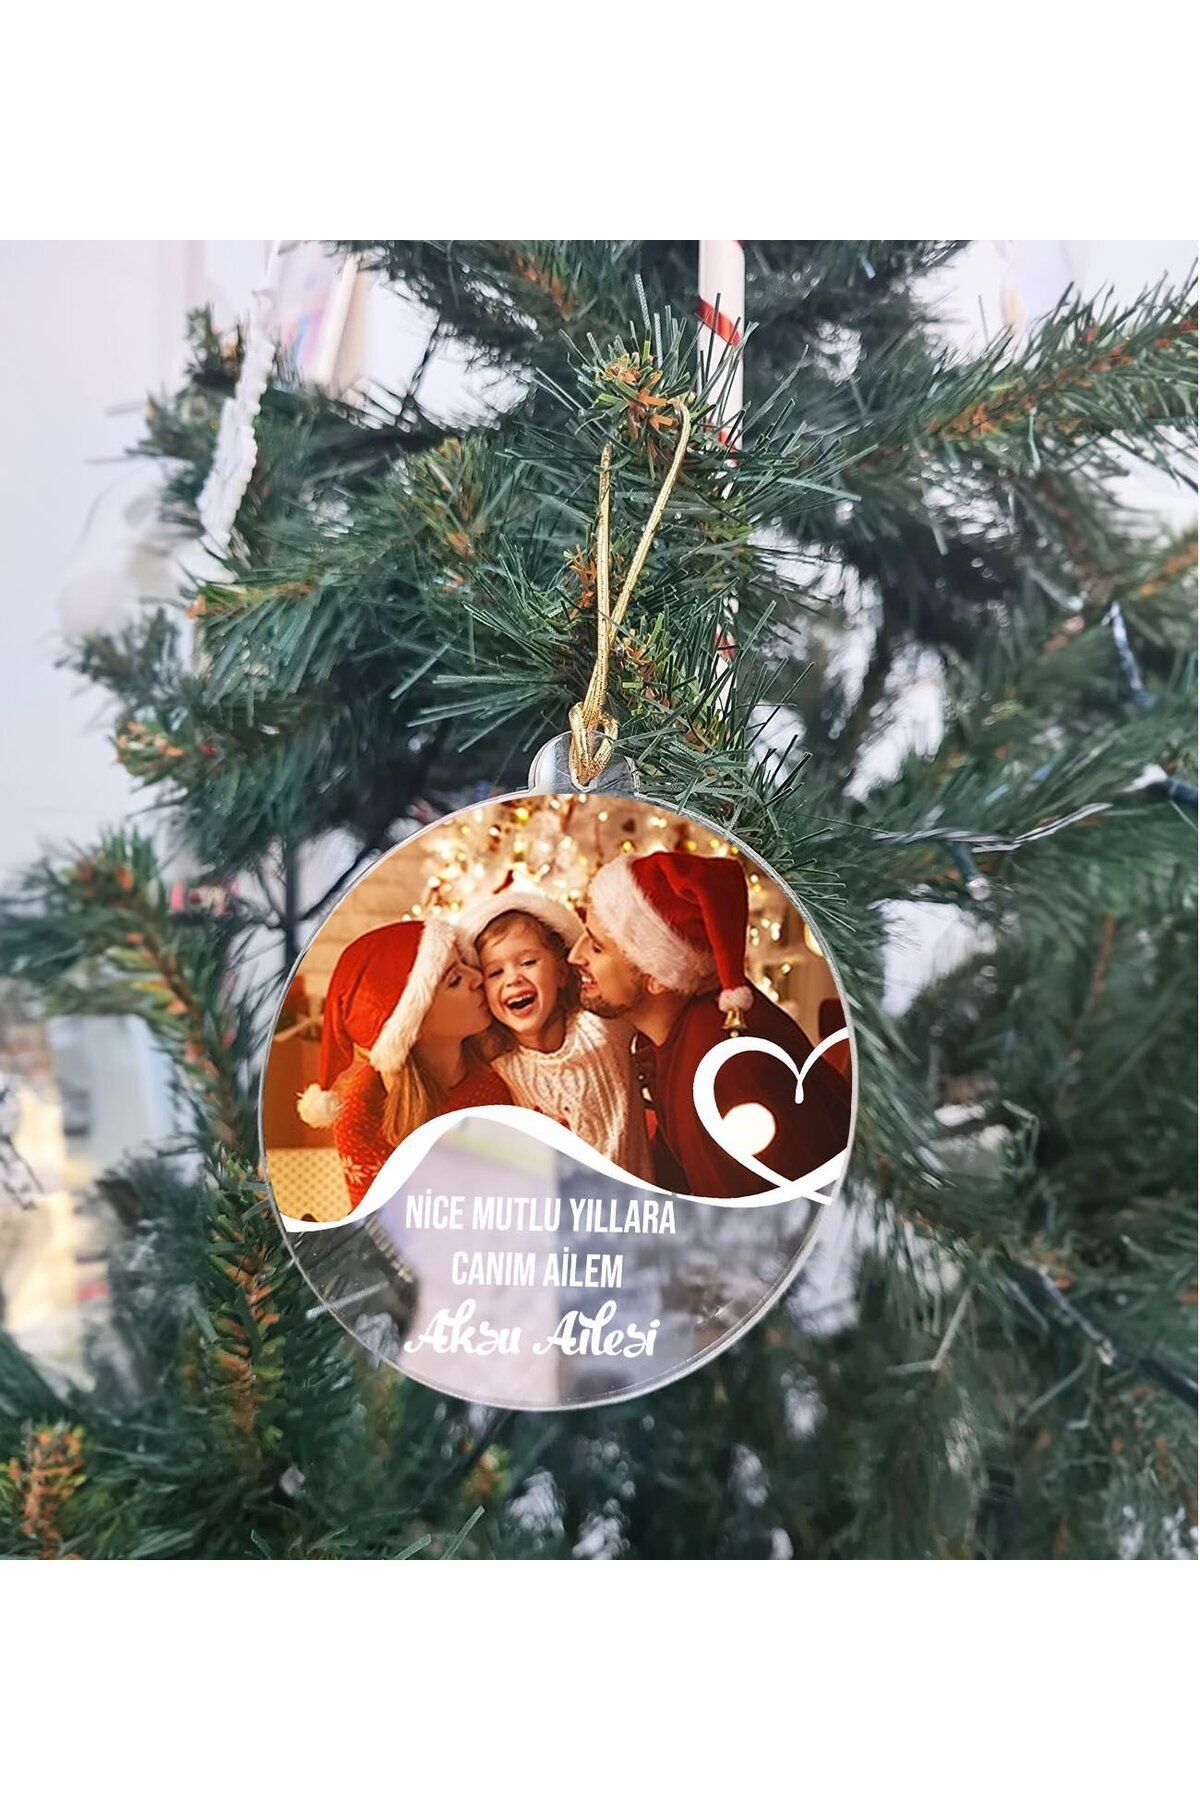 Bk Gift Kişiye Özel Aile Şeffaf Pleksi Yılbaşı Ağaç Süsü- 1, Yeni Yıl Hediyesi, Fotoğraflı & Mesajlı